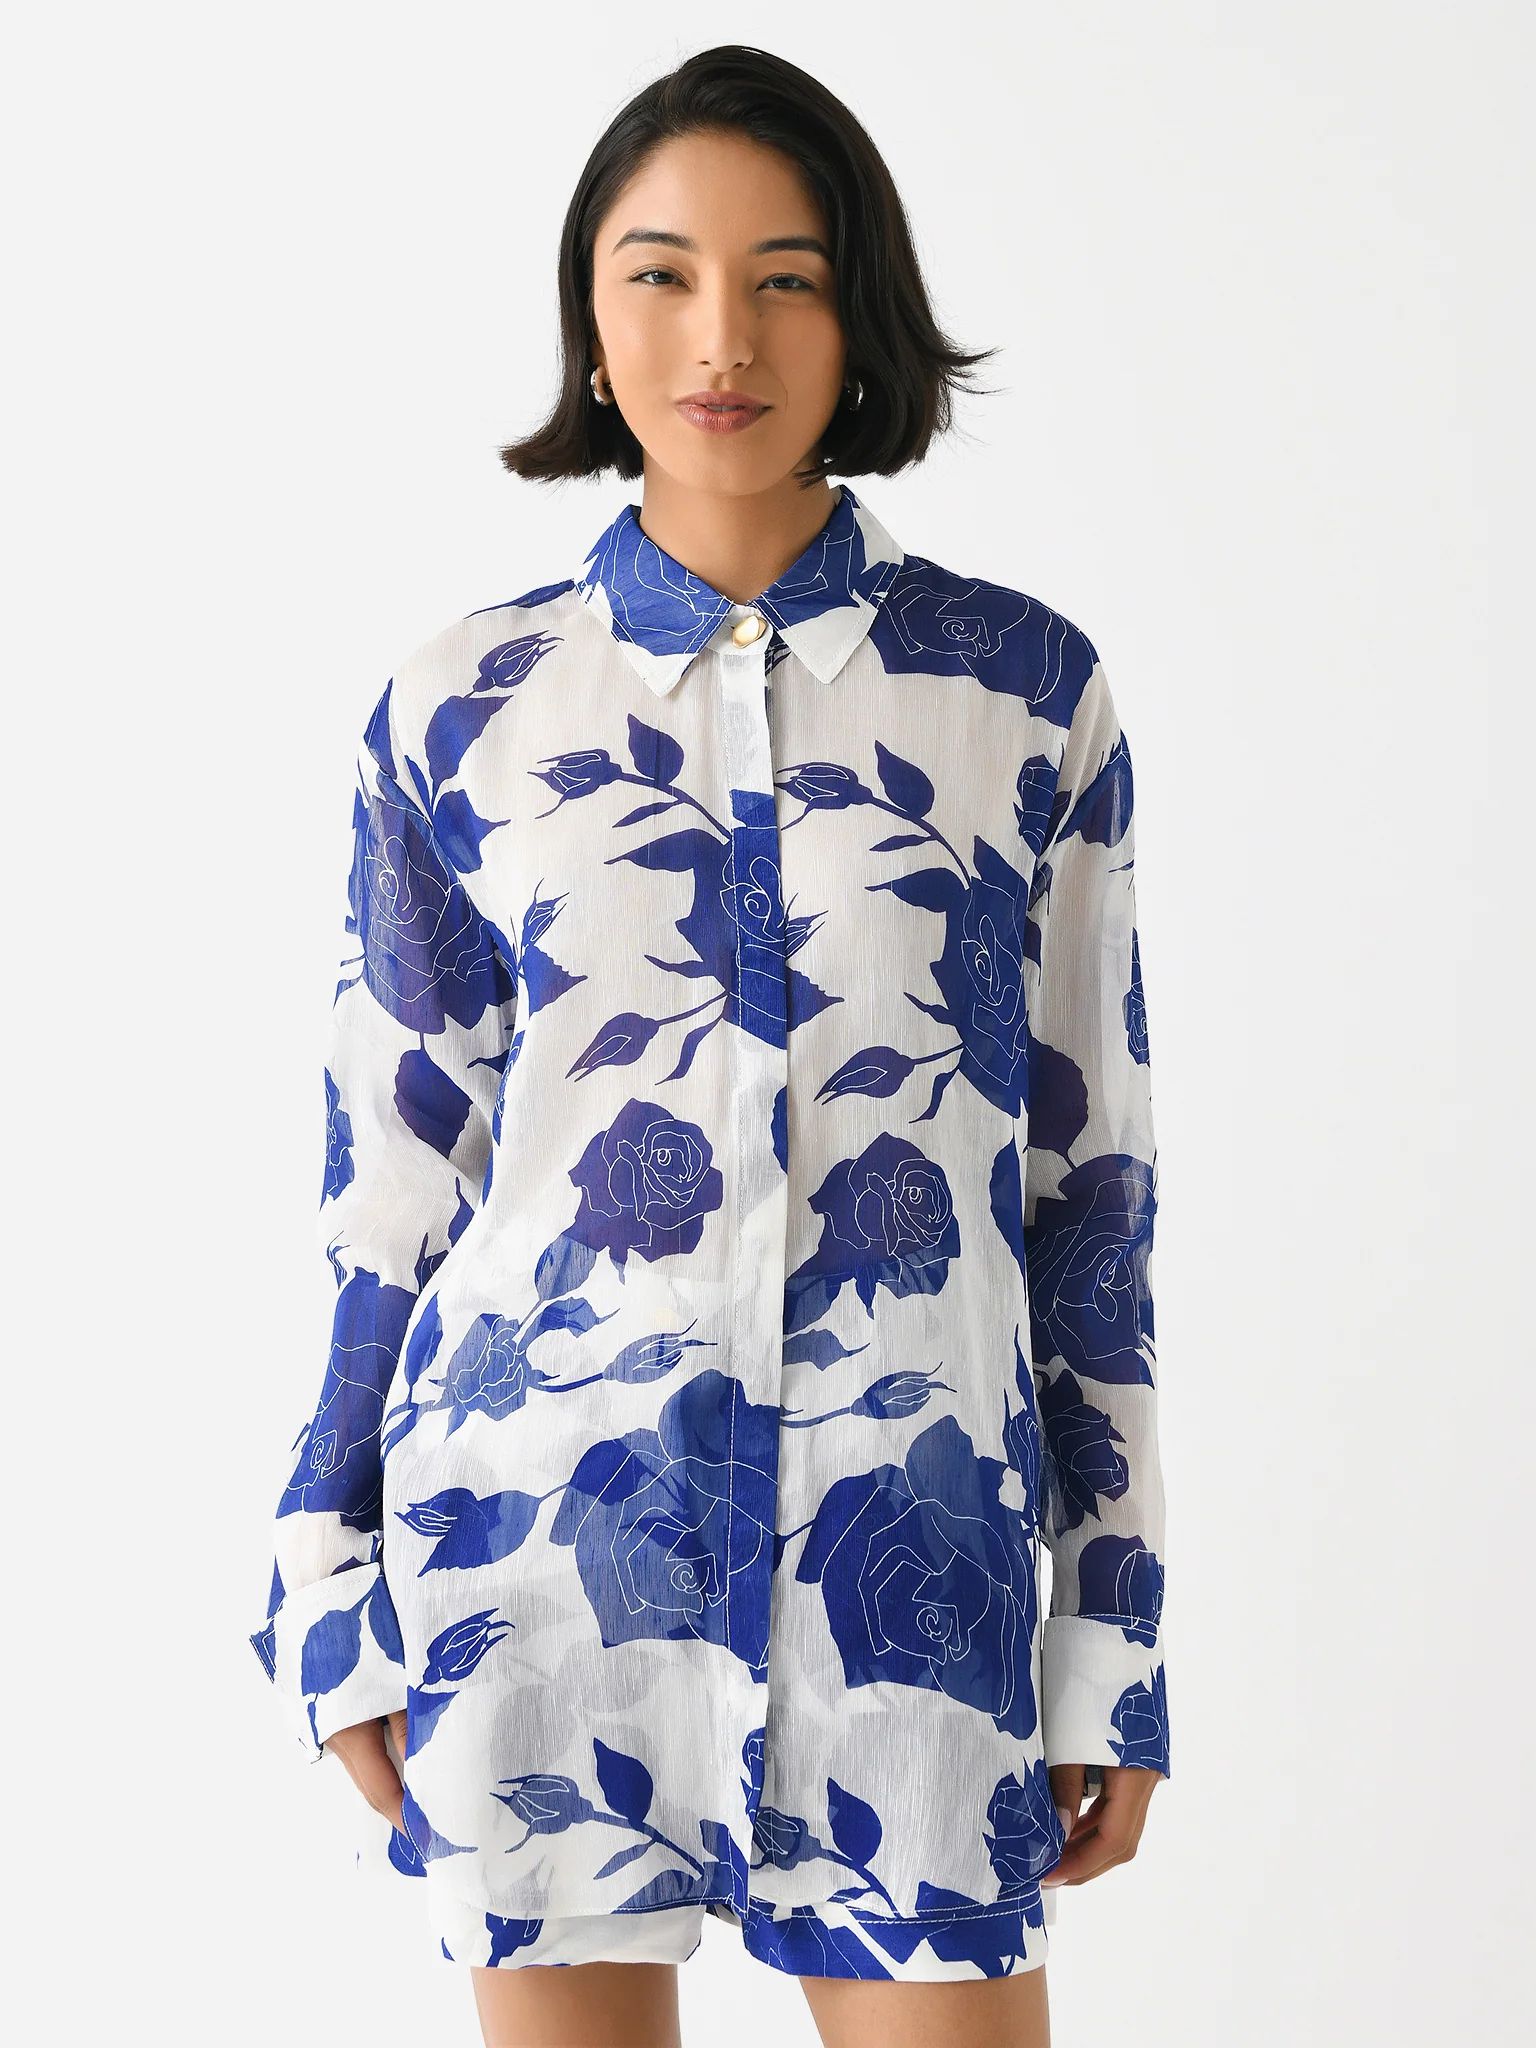 AJE
                      
                     Women's Belonging Oversized Shirt | Saint Bernard